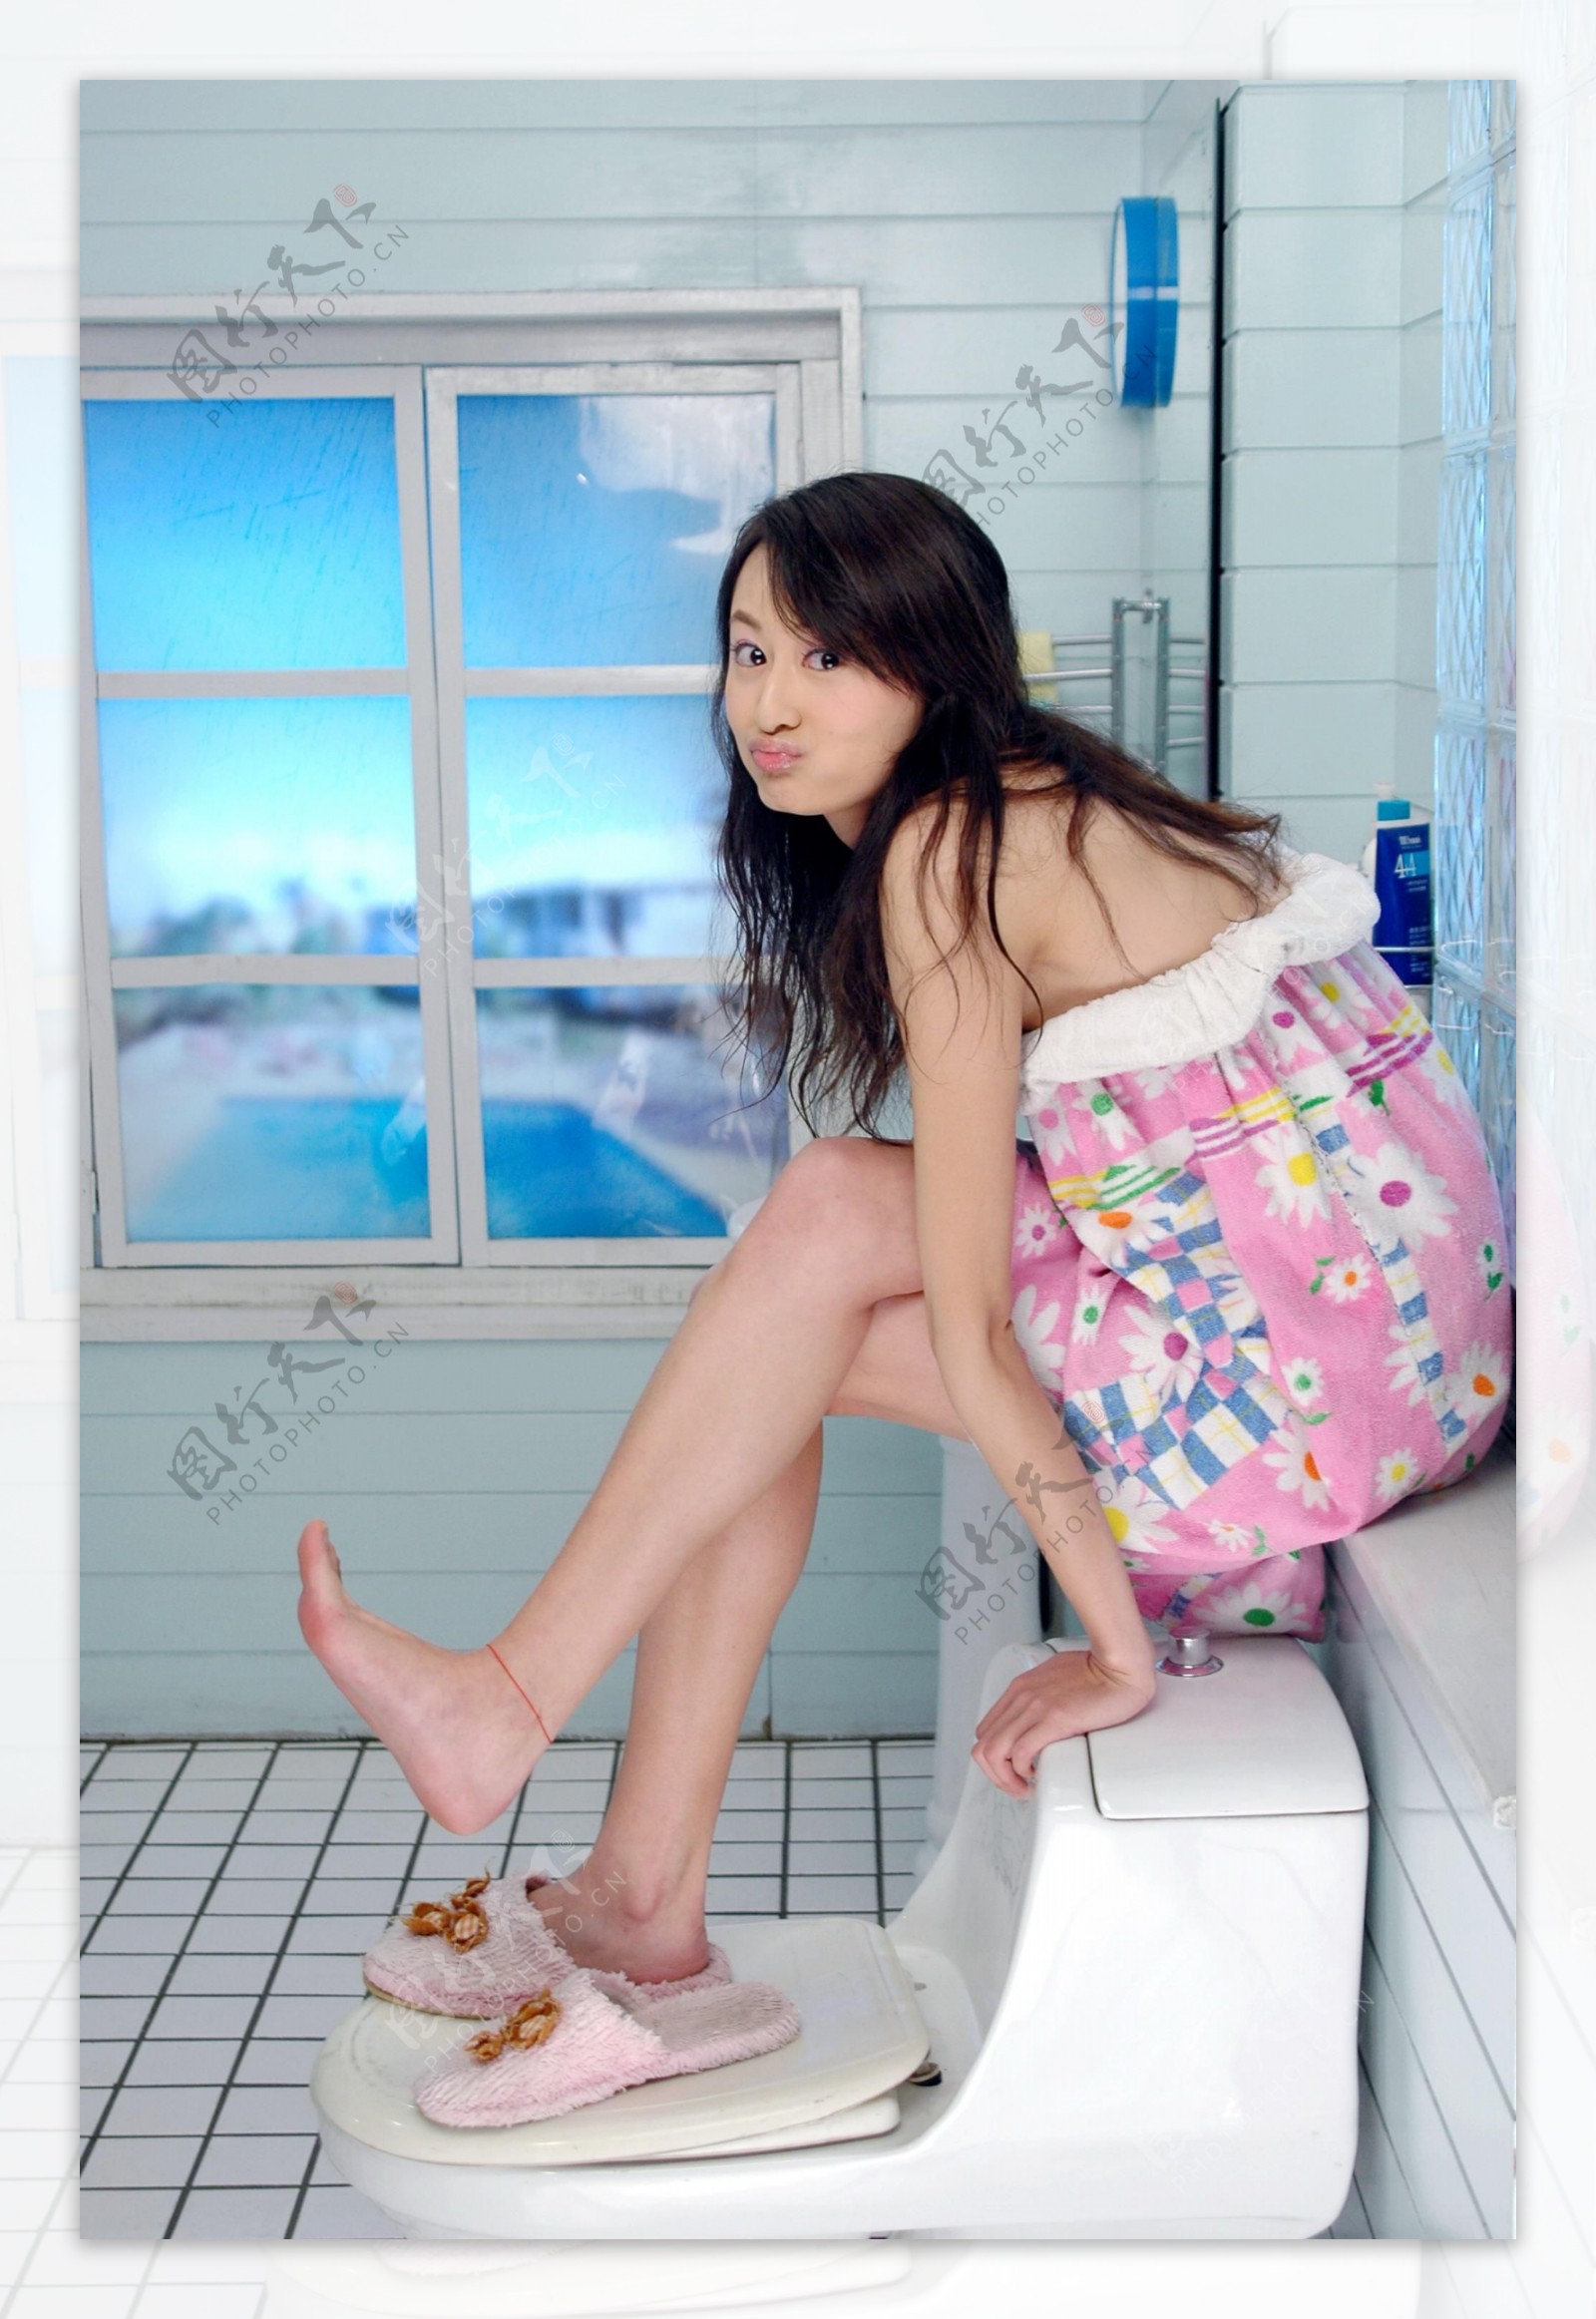 时尚个性美女写真卫生间里的淘气图片